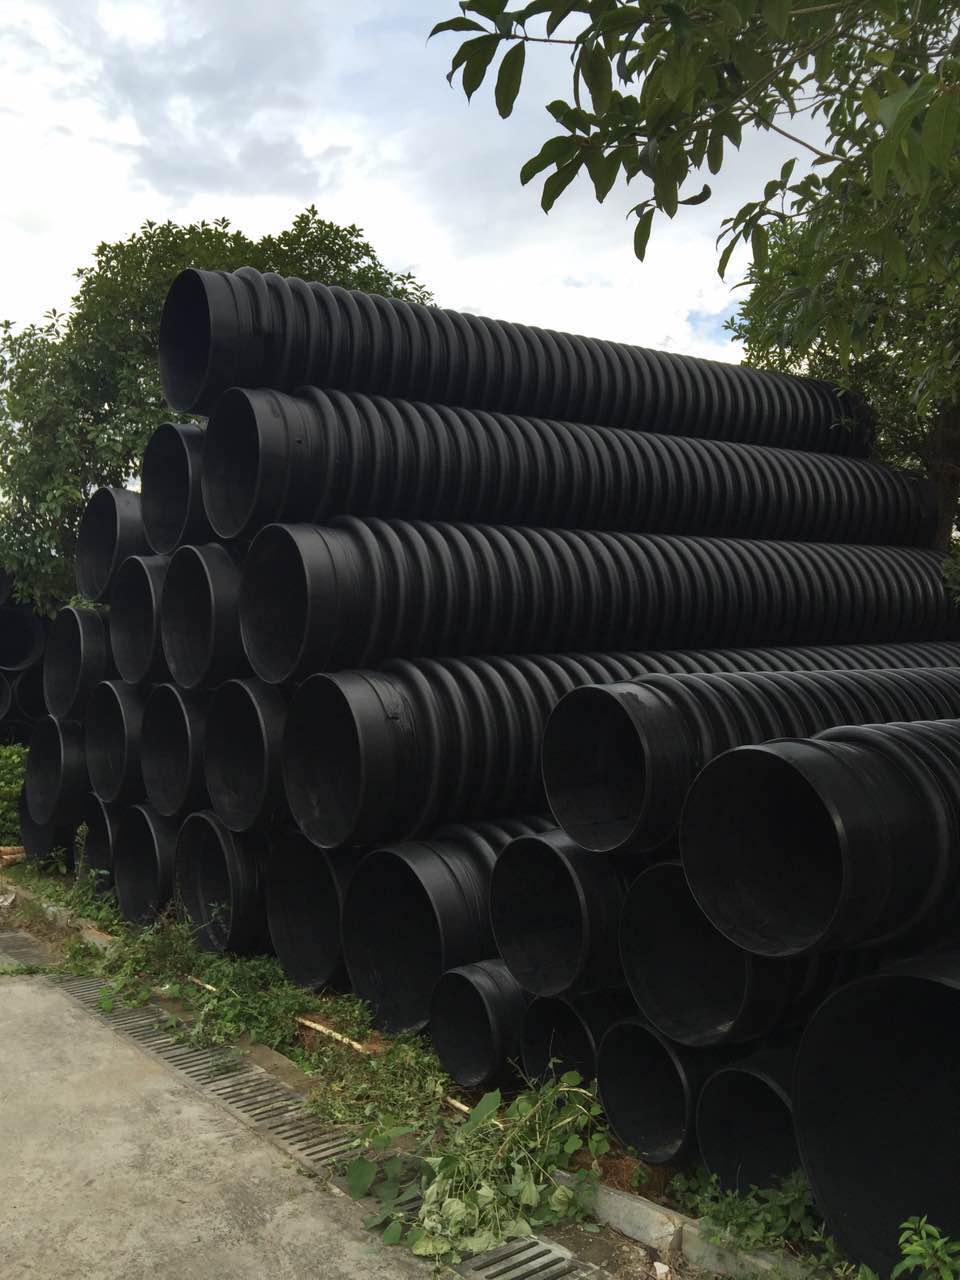 克拉管 克拉管厂家 2017克拉管价格 高密度聚乙烯缠绕管